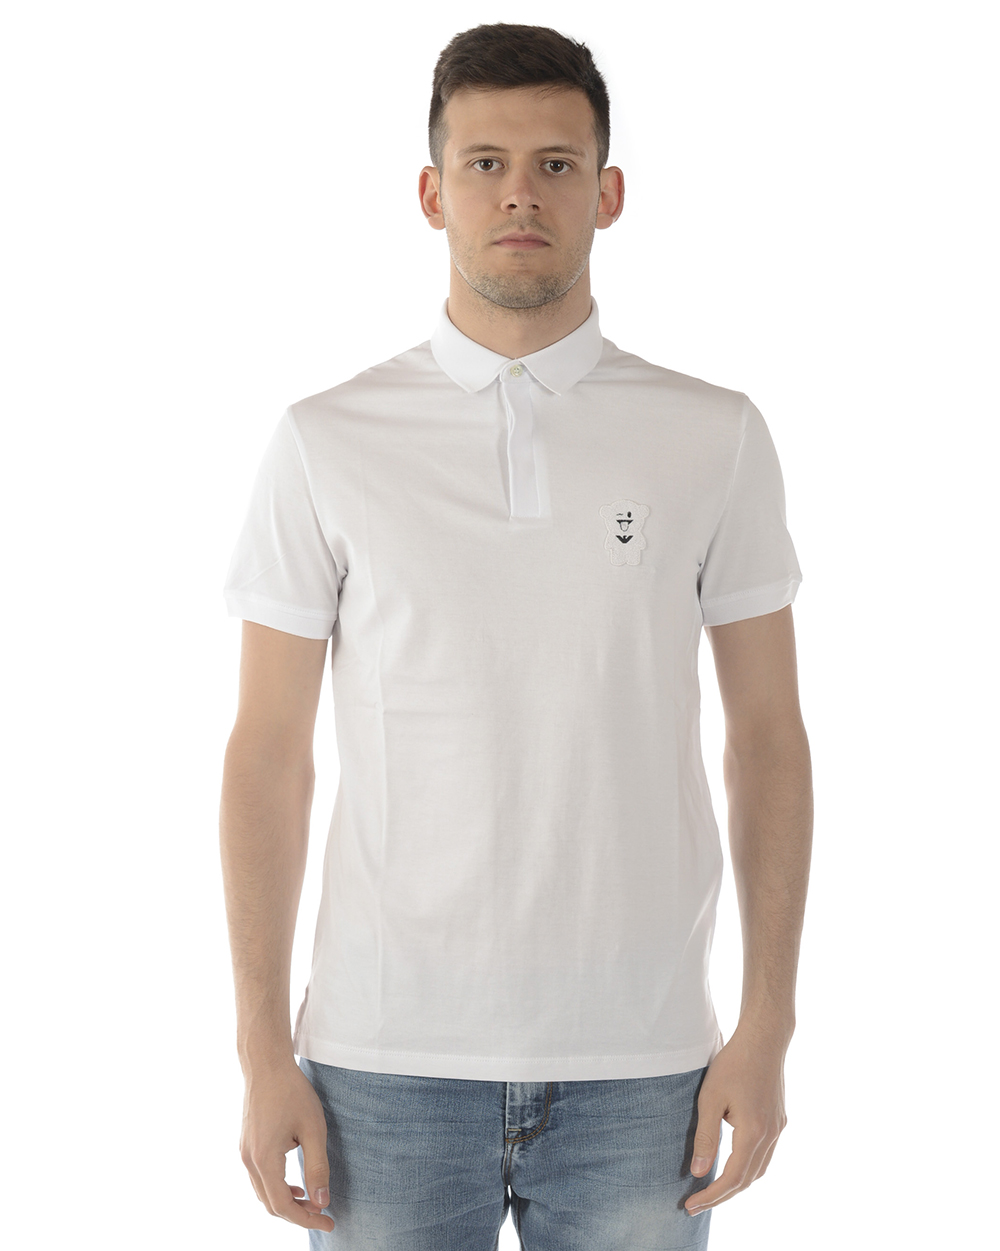 Emporio Armani Polo Shirt Cotton Man White 3G1F71 1J30Z 100 Sz L MAKE OFFER